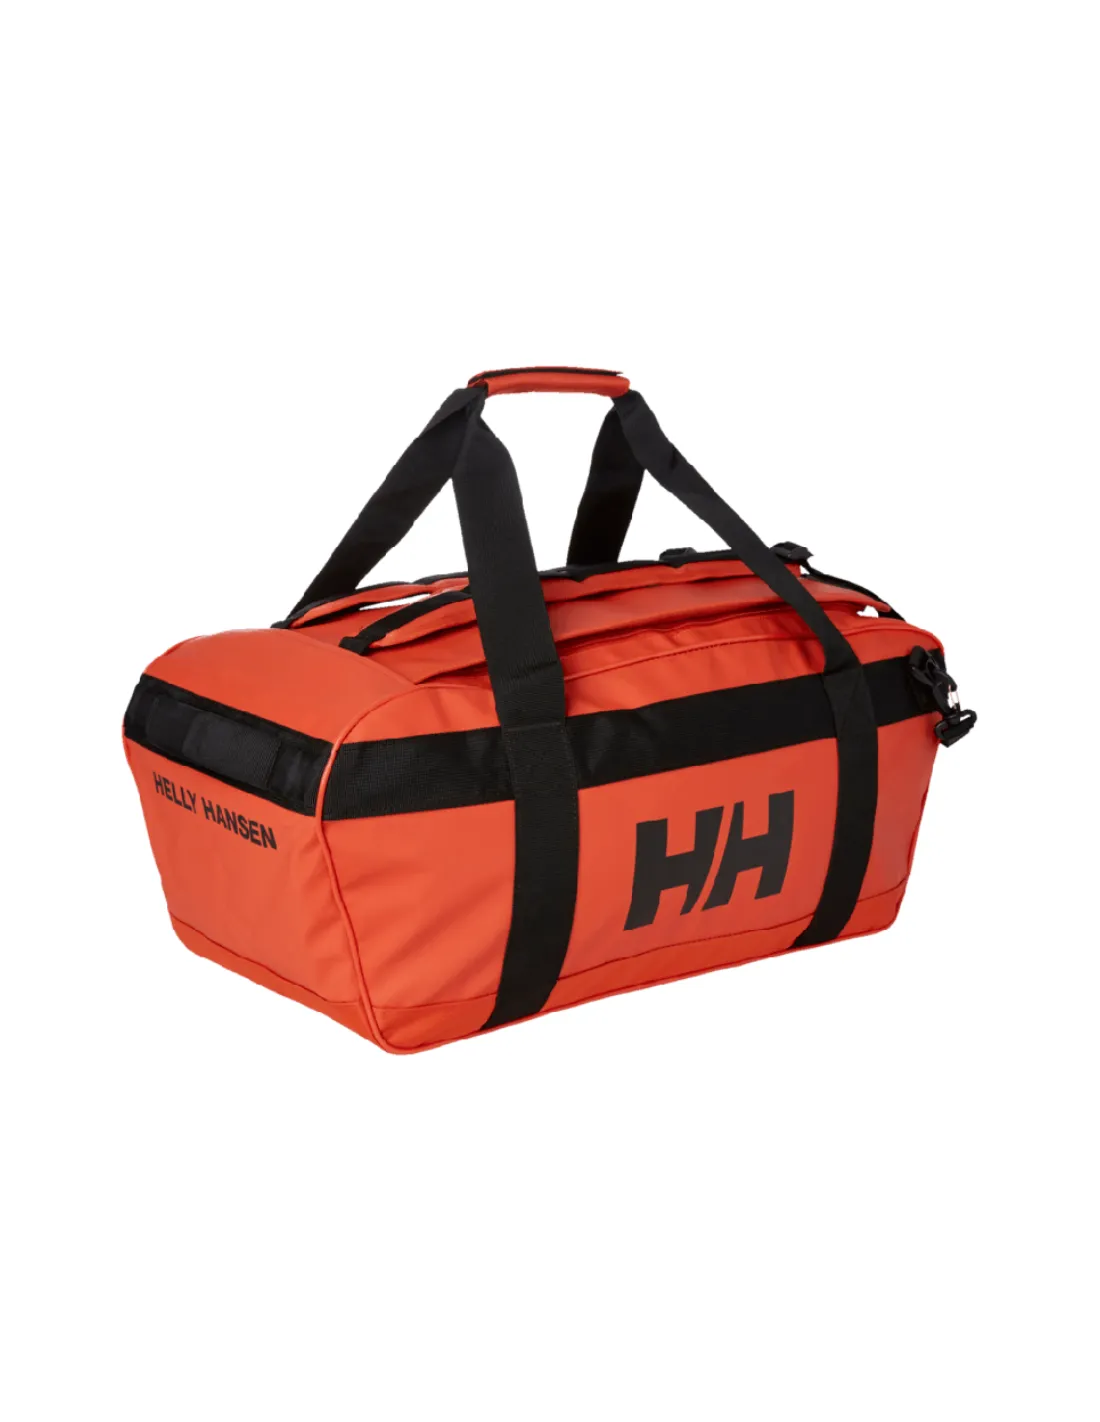 Helly Hansen Scout Seesack Duffle Bag, Medium